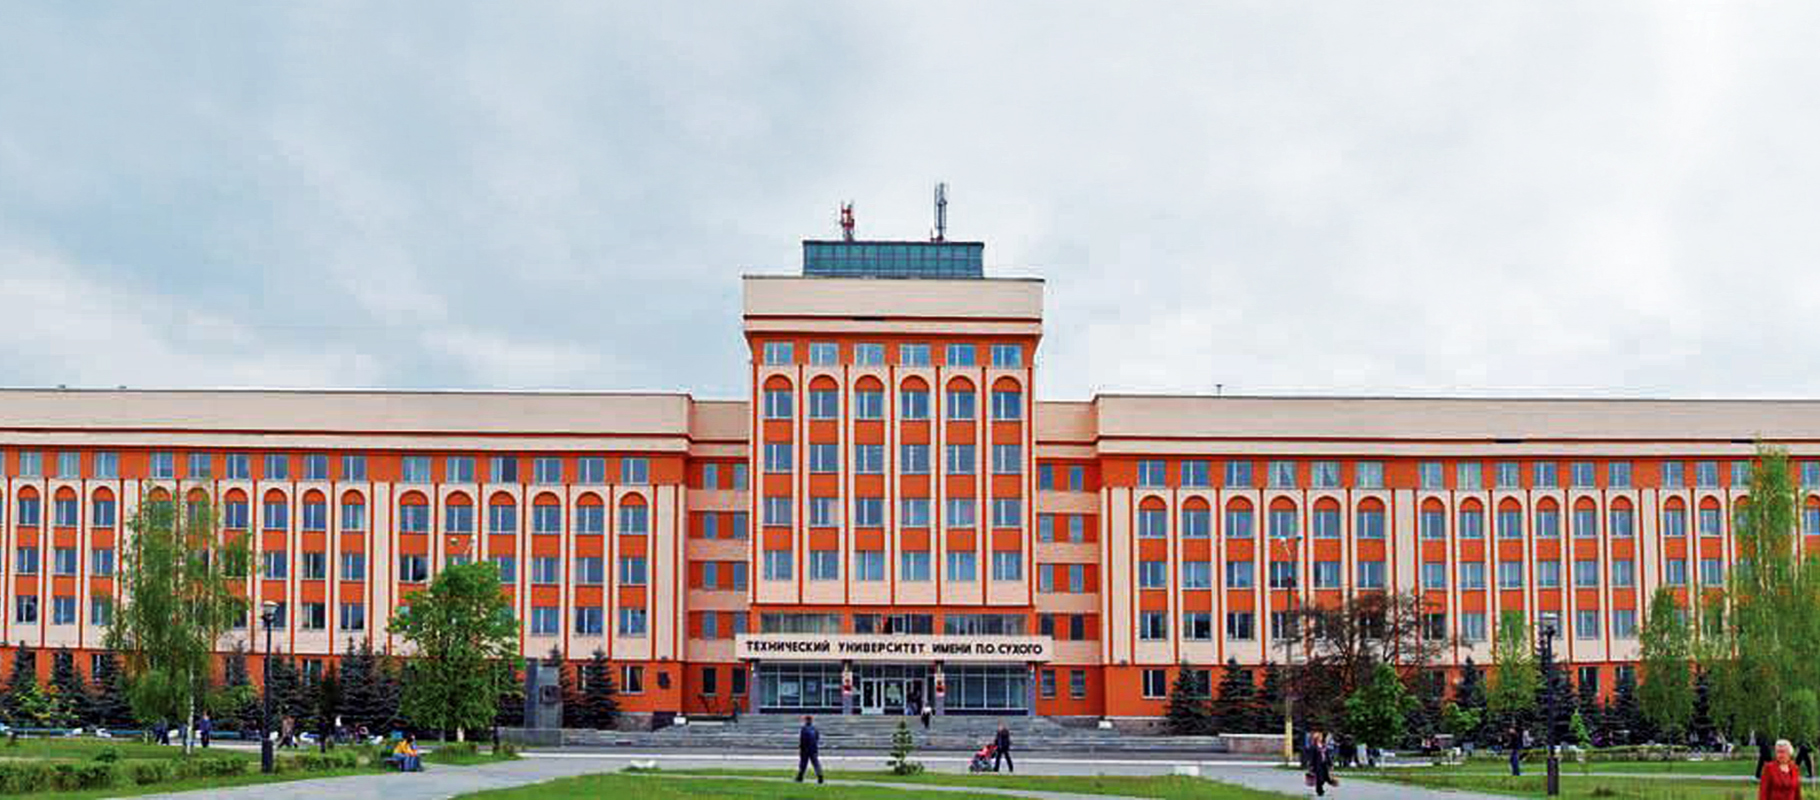 Sukhoi Gomel State Technical University the main image